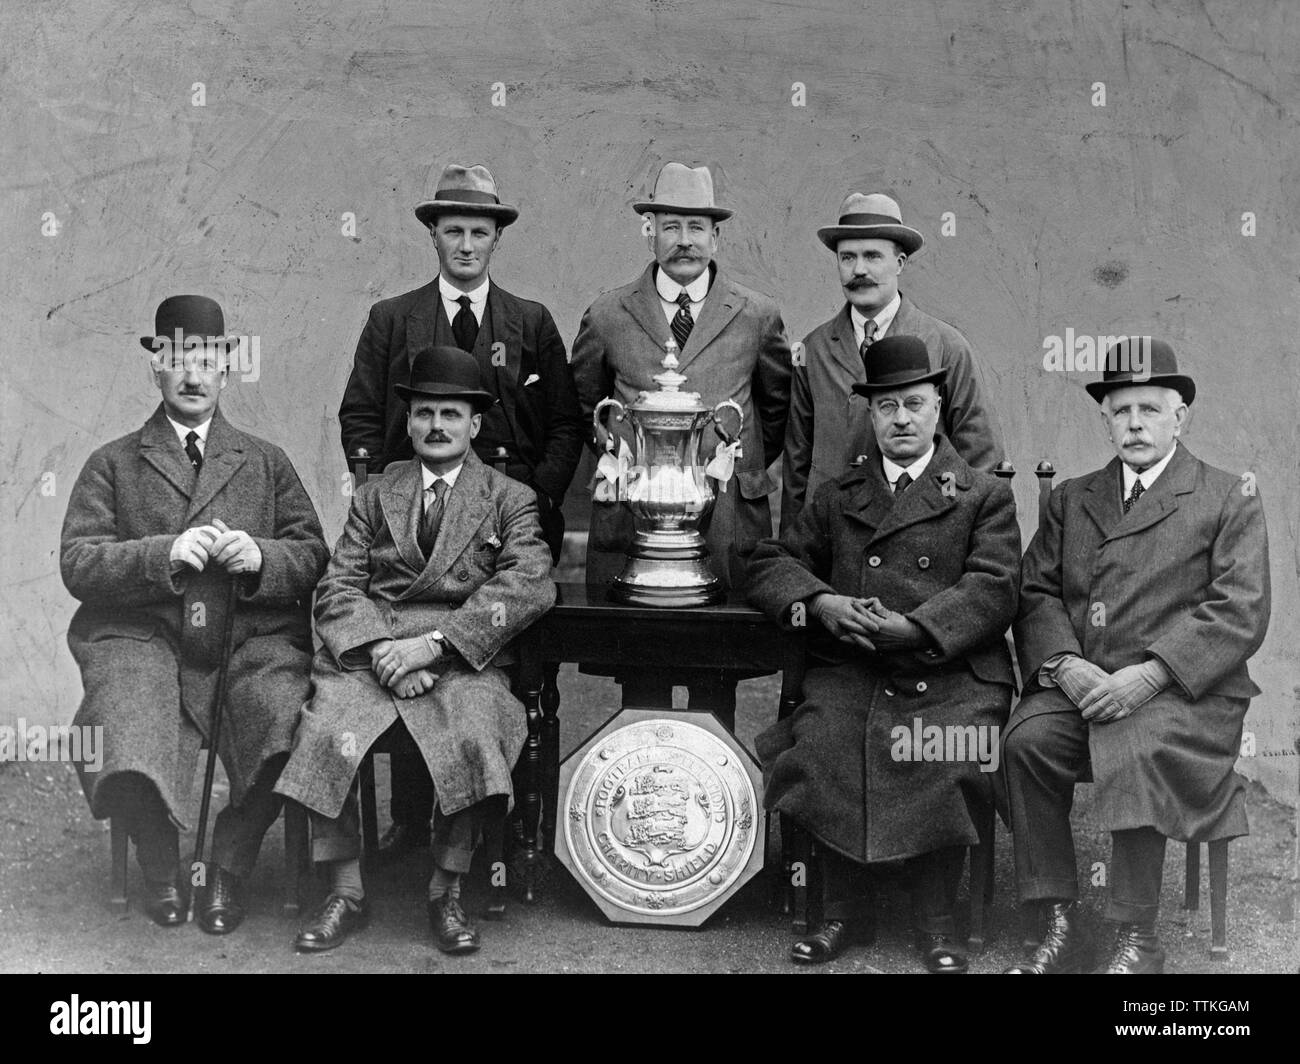 Un millésime 1970 Photographie noir et blanc montrant des membres de l'English Football Association avec la FA Cup trophy et charité bouclier. Photographie prise pendant les années 1920 ou 1930. Banque D'Images